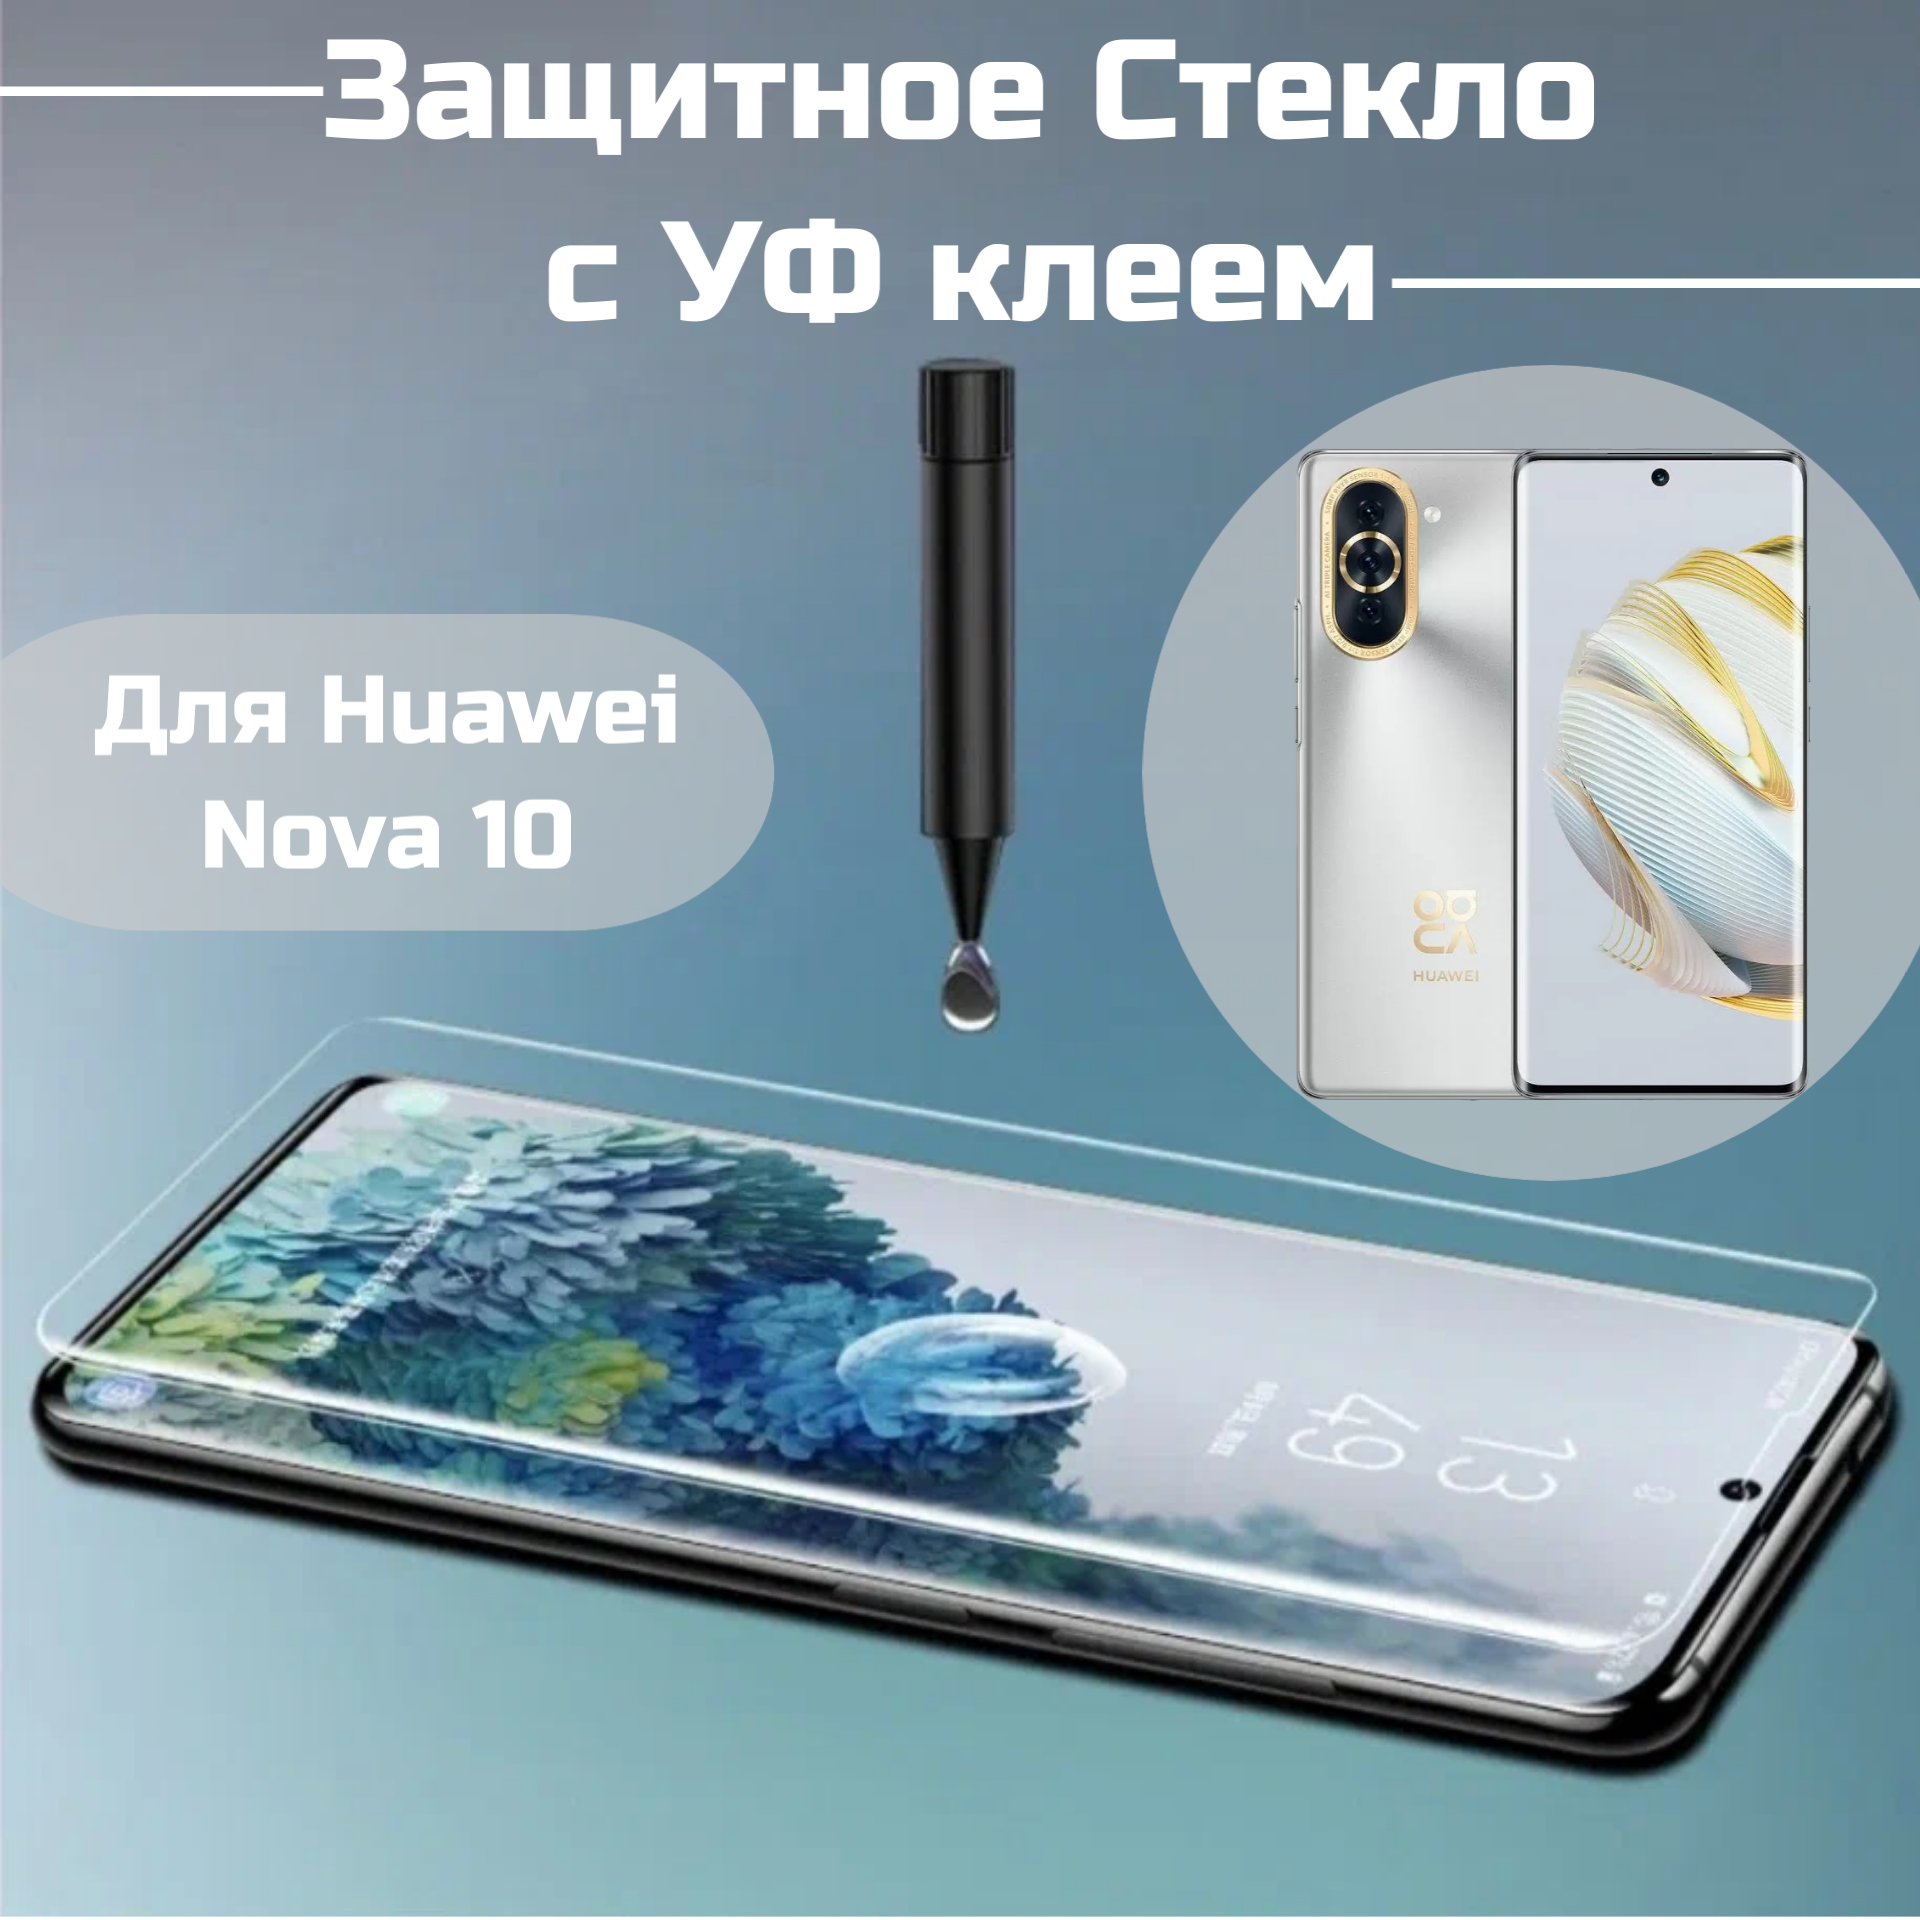 Защитное стекло Huawei Nova 10 с уф клеем и лампой Полноэкранное стекло Хуавей нова 10